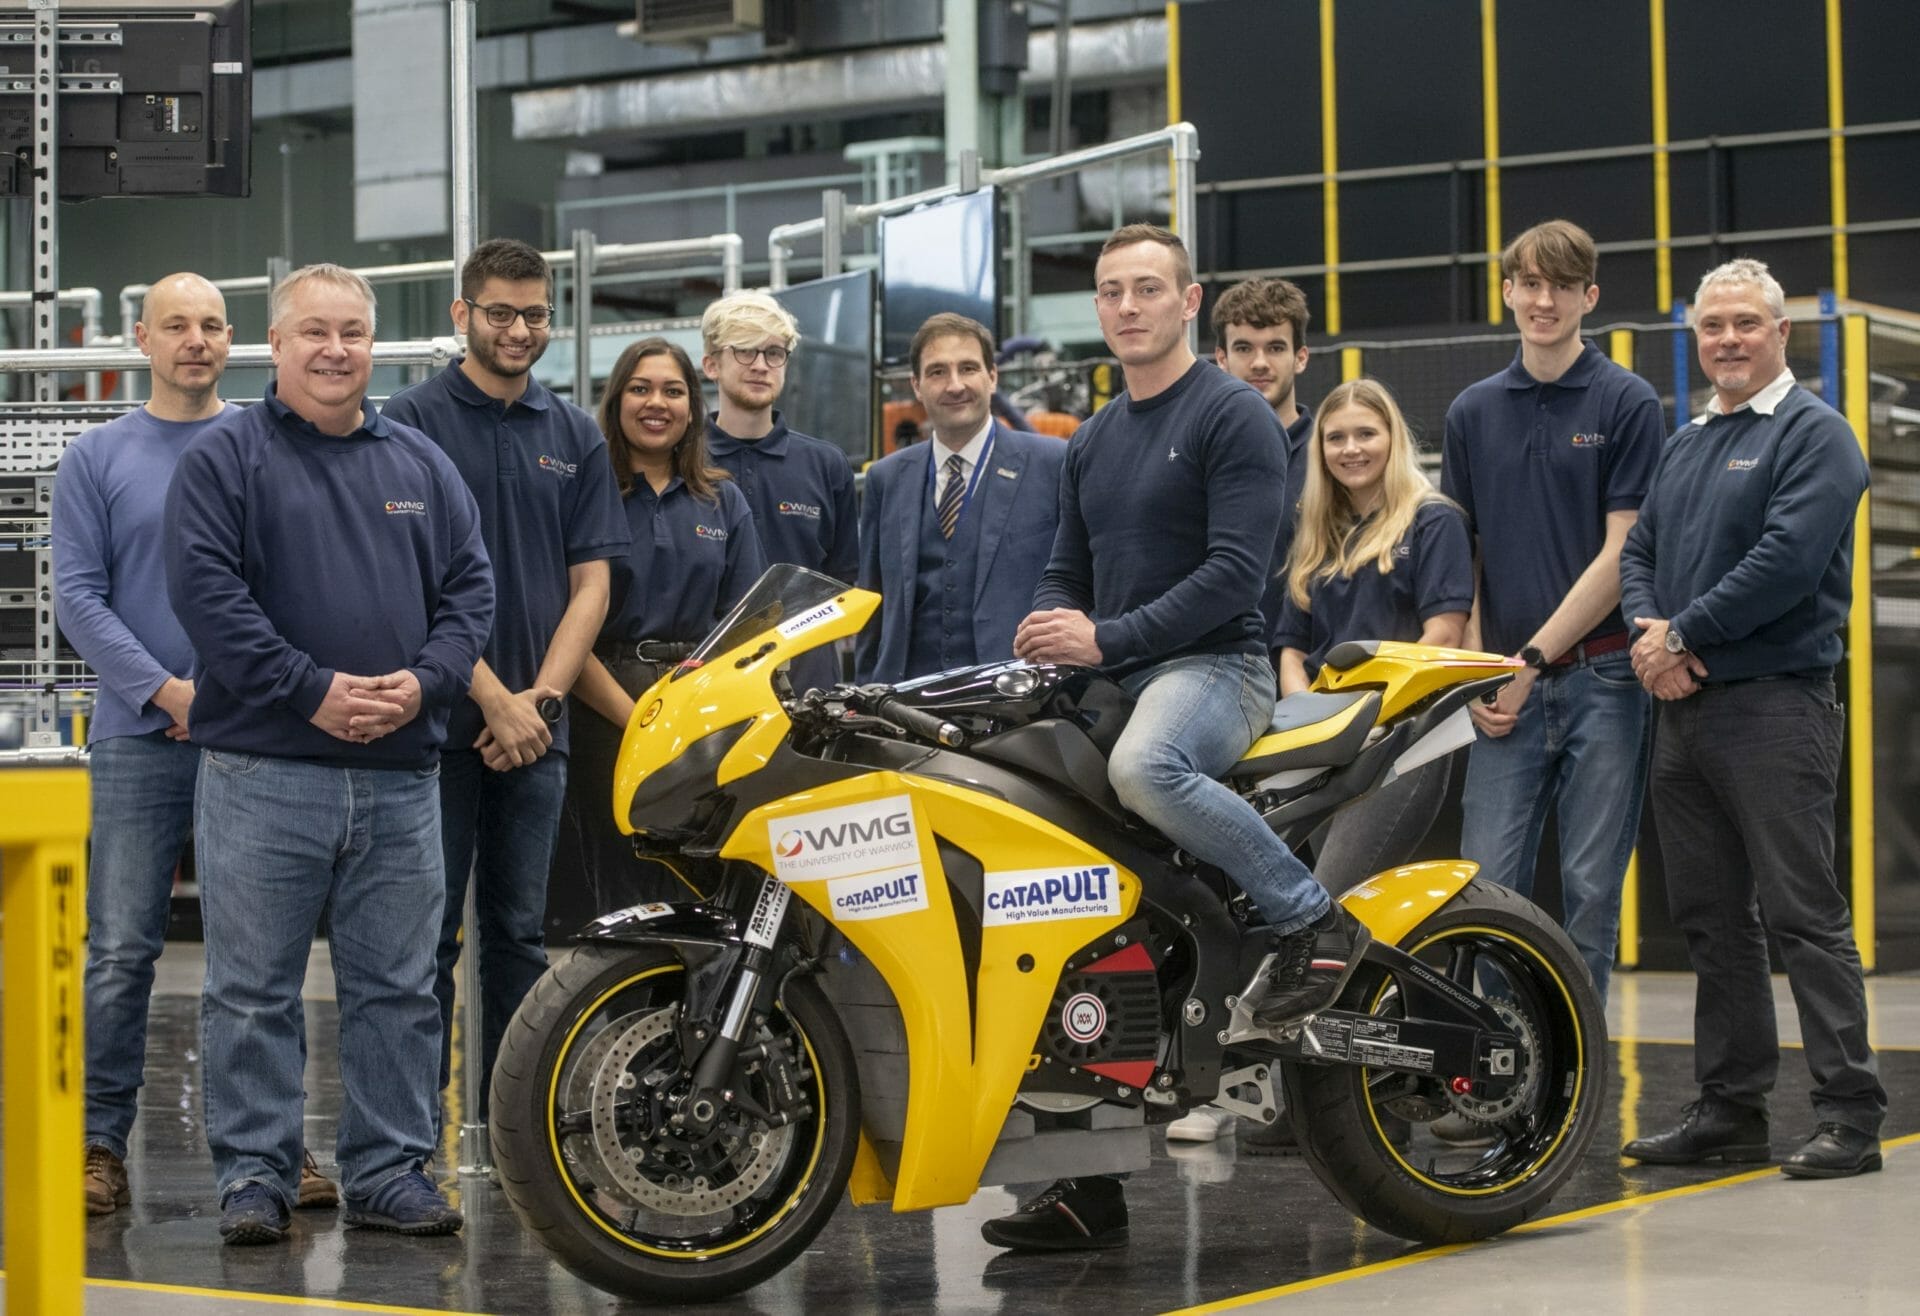 Die University of Warwick baut elektro-Superbike für die Rennstrecke
- auch in der MOTORRAD NACHRICHTEN APP